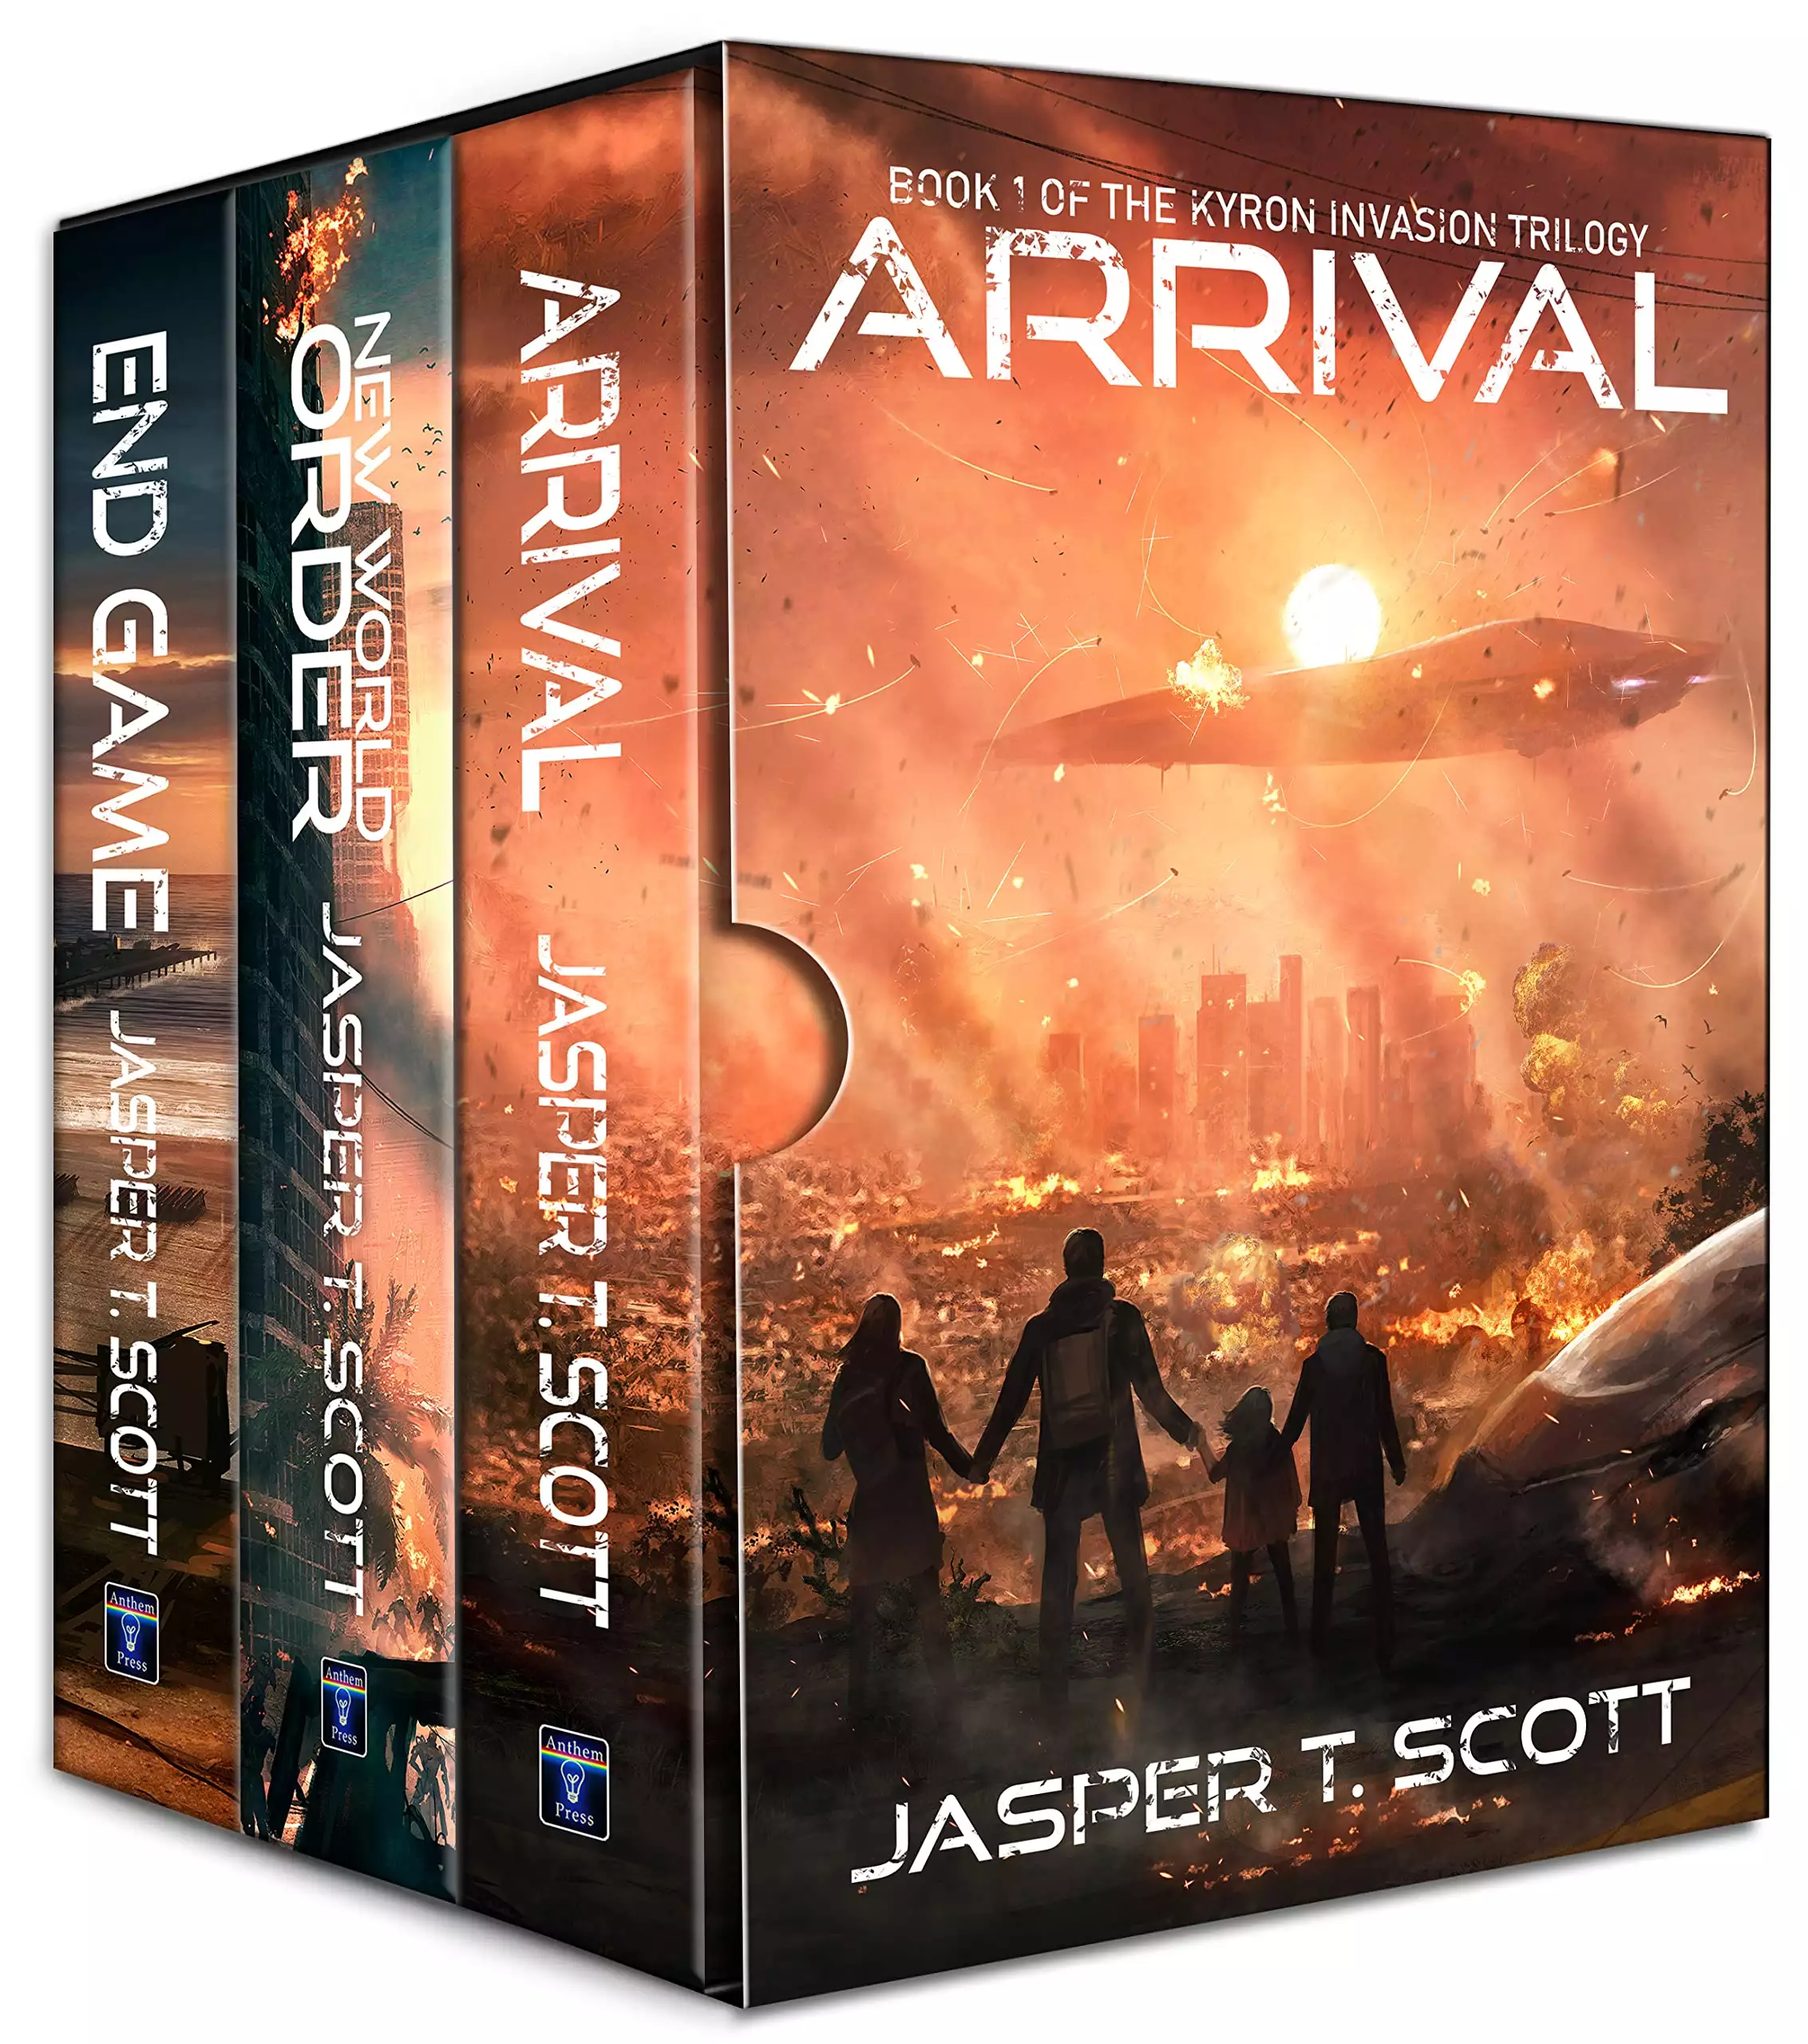 Kyron Invasion: The Complete Series (Books 1-3) (Jasper Scott Box Sets)